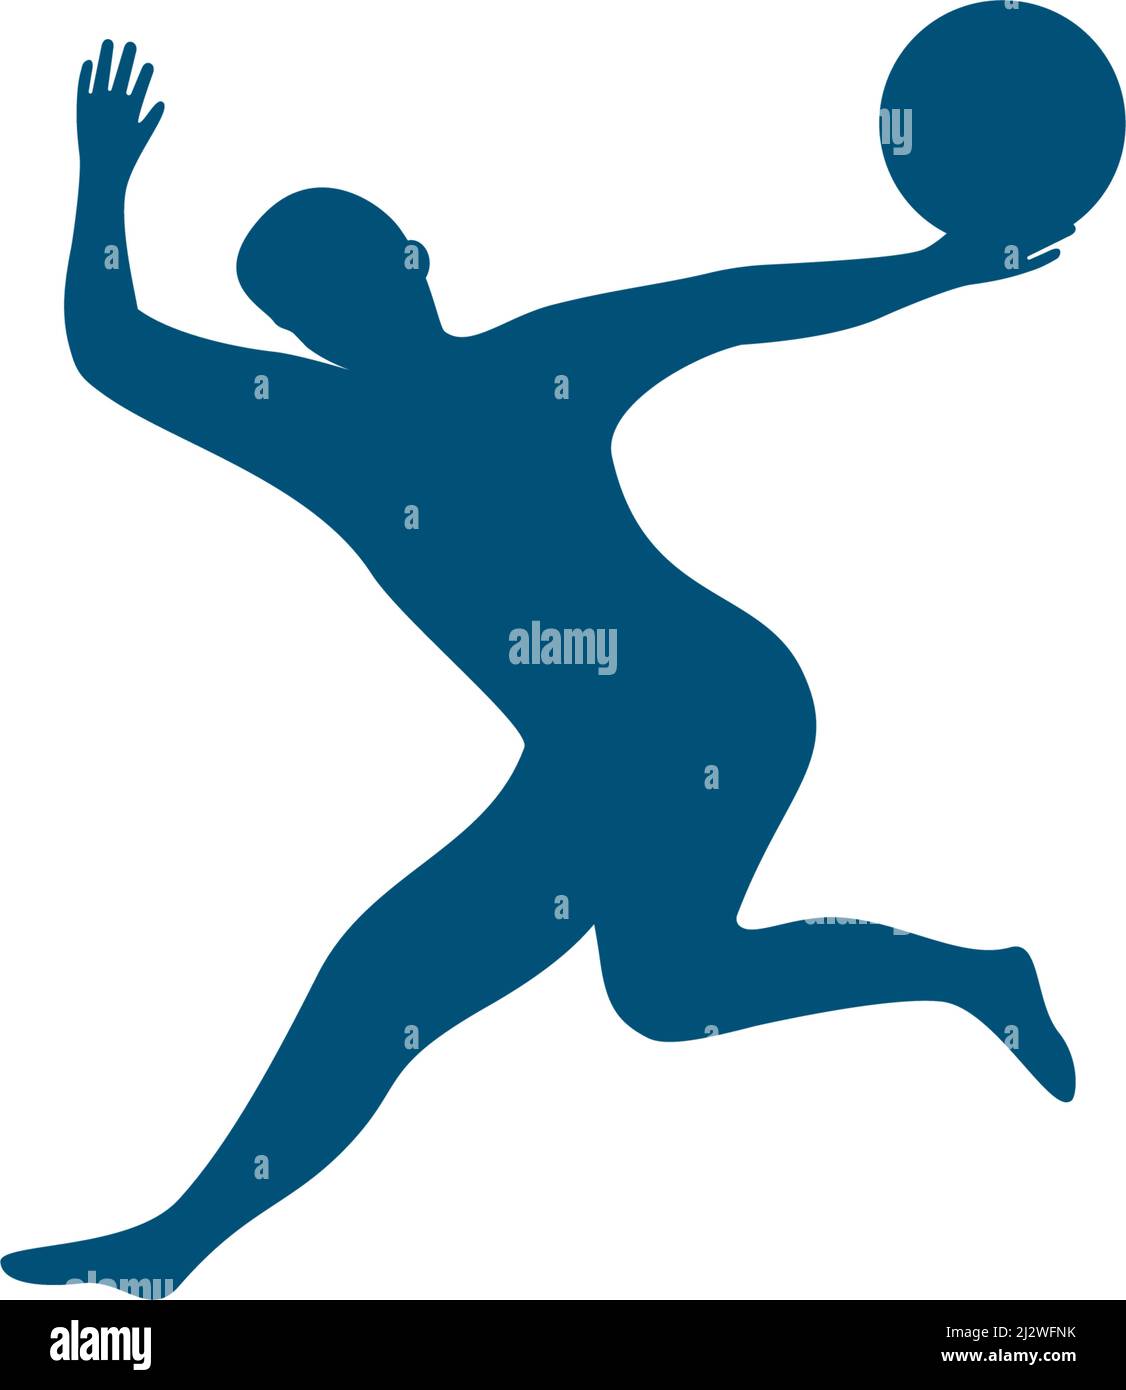 Basketball player jumps logo vector Stock Vector